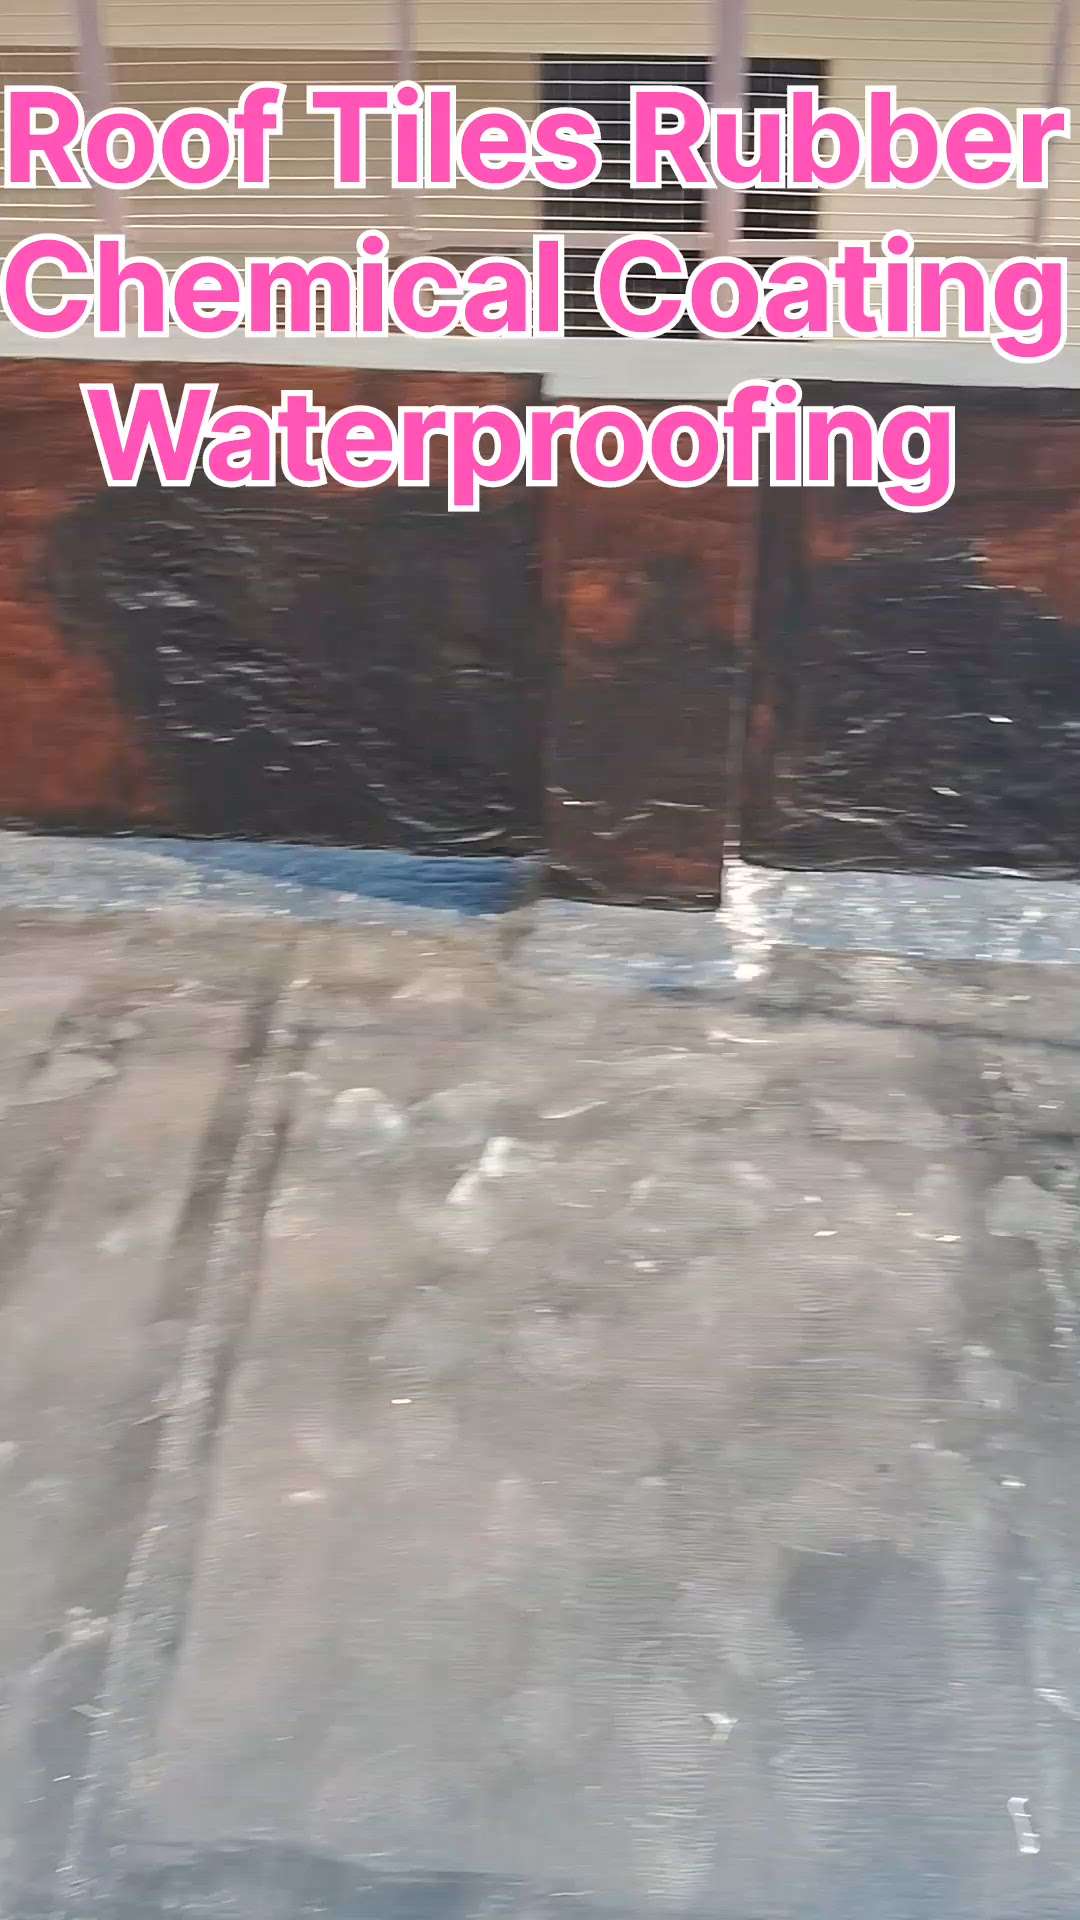 #waterproofingtreatmentroof